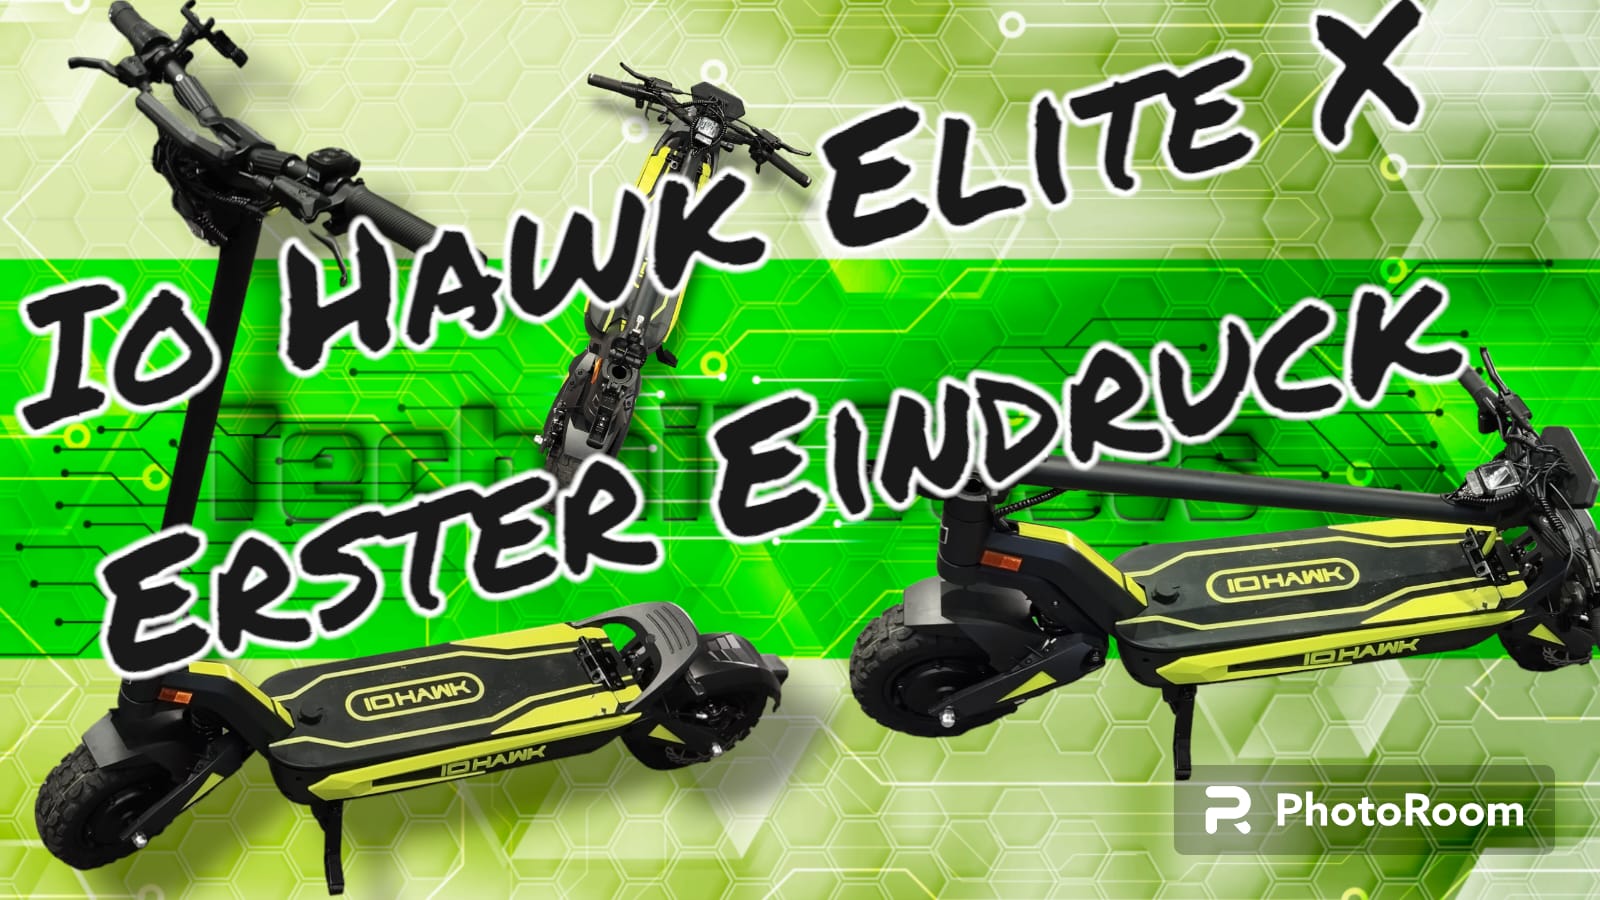 IO Hawk Elite X Erster Eindruck des ULTIMATIVEN POWER SCOOTER / kein Test / E-Scooter mit Zulassung